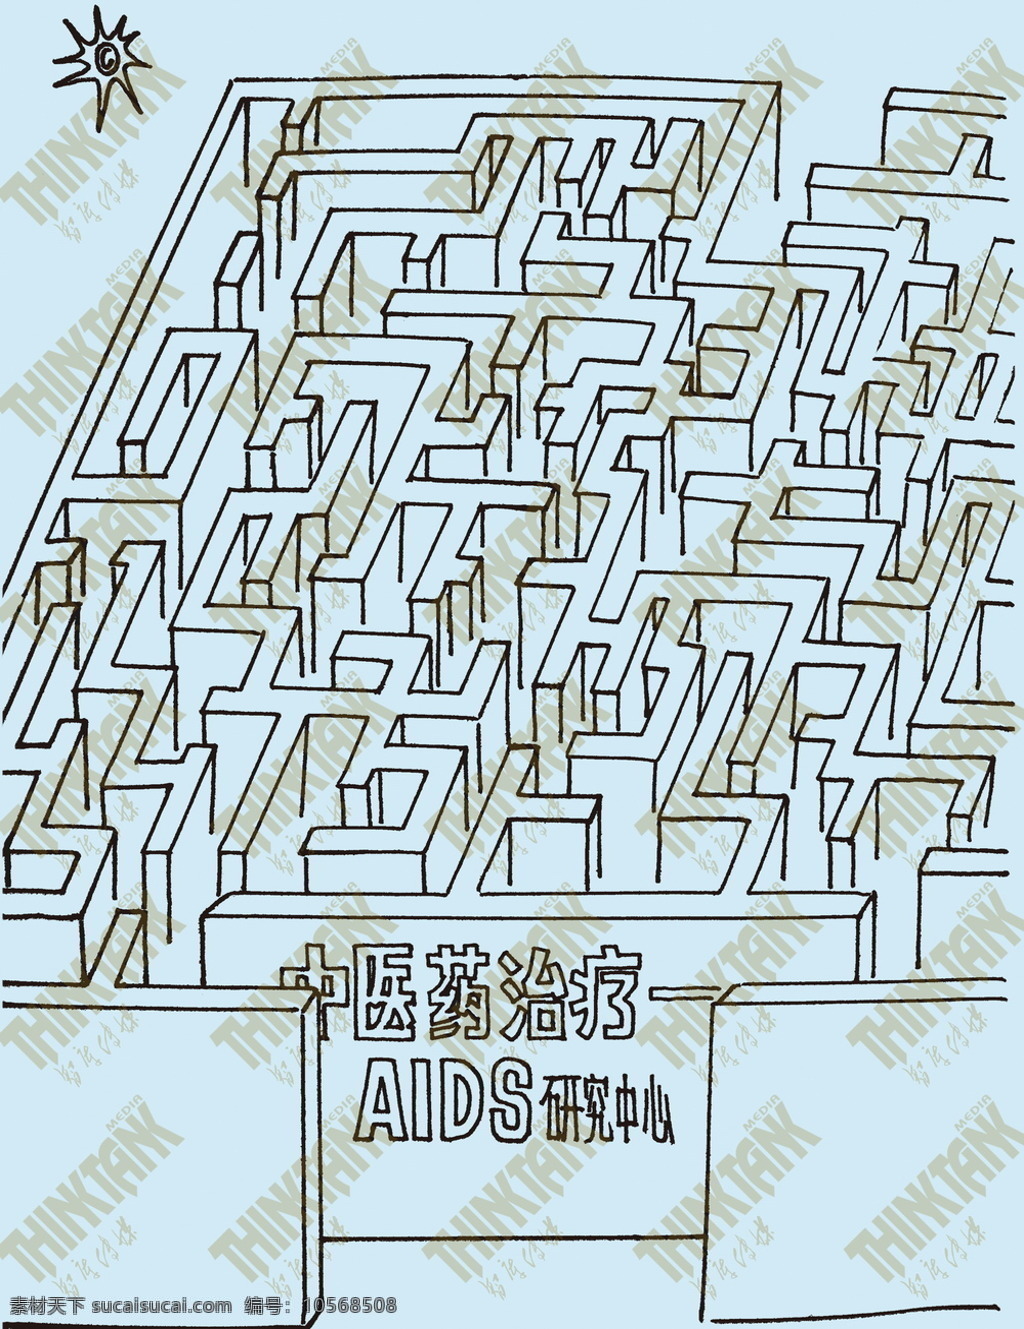 动漫动画 公益漫画 教育 迷宫 预防艾滋病 展览 aids漫画 知识普及 遏制艾滋 履行承诺 aids 艾滋病漫画 展板 公益展板设计